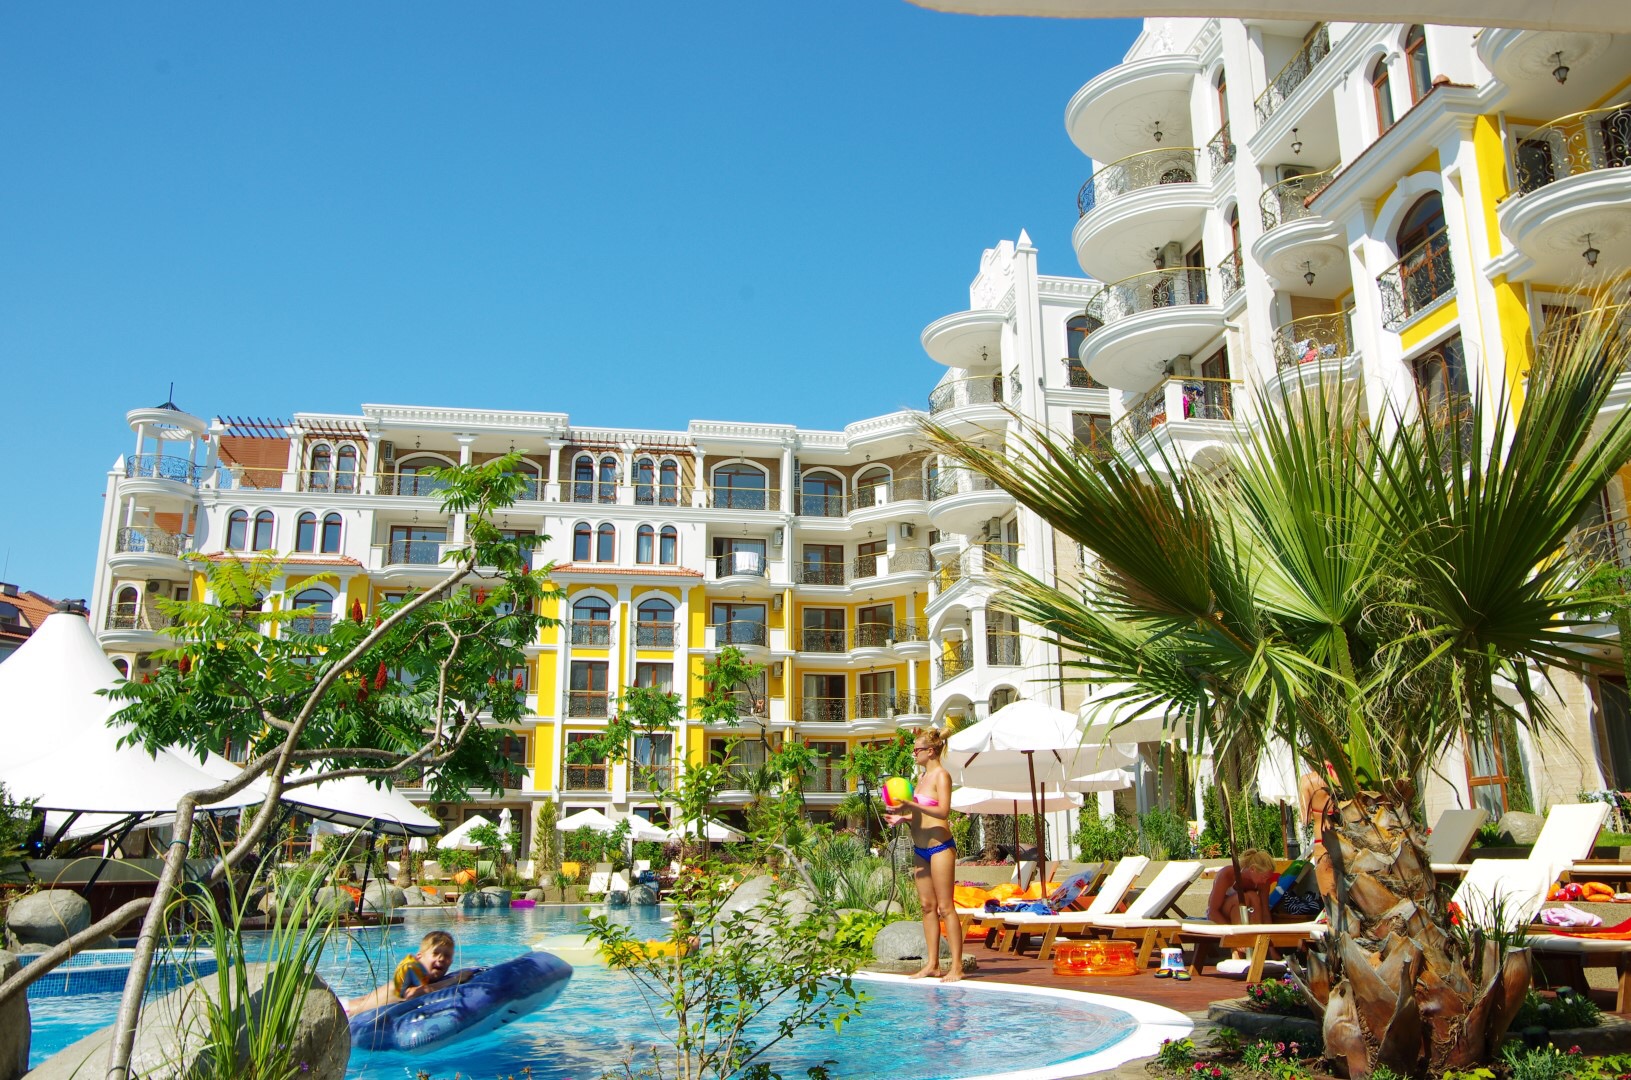 Продается шикарная квартира общей площадью 53,63 кв. м совместно с балконом площадью 24,69 кв. м, которая располагается в теплой Болгарии, на одном из самых живописных и популярных морских курортов - Солнечный берег